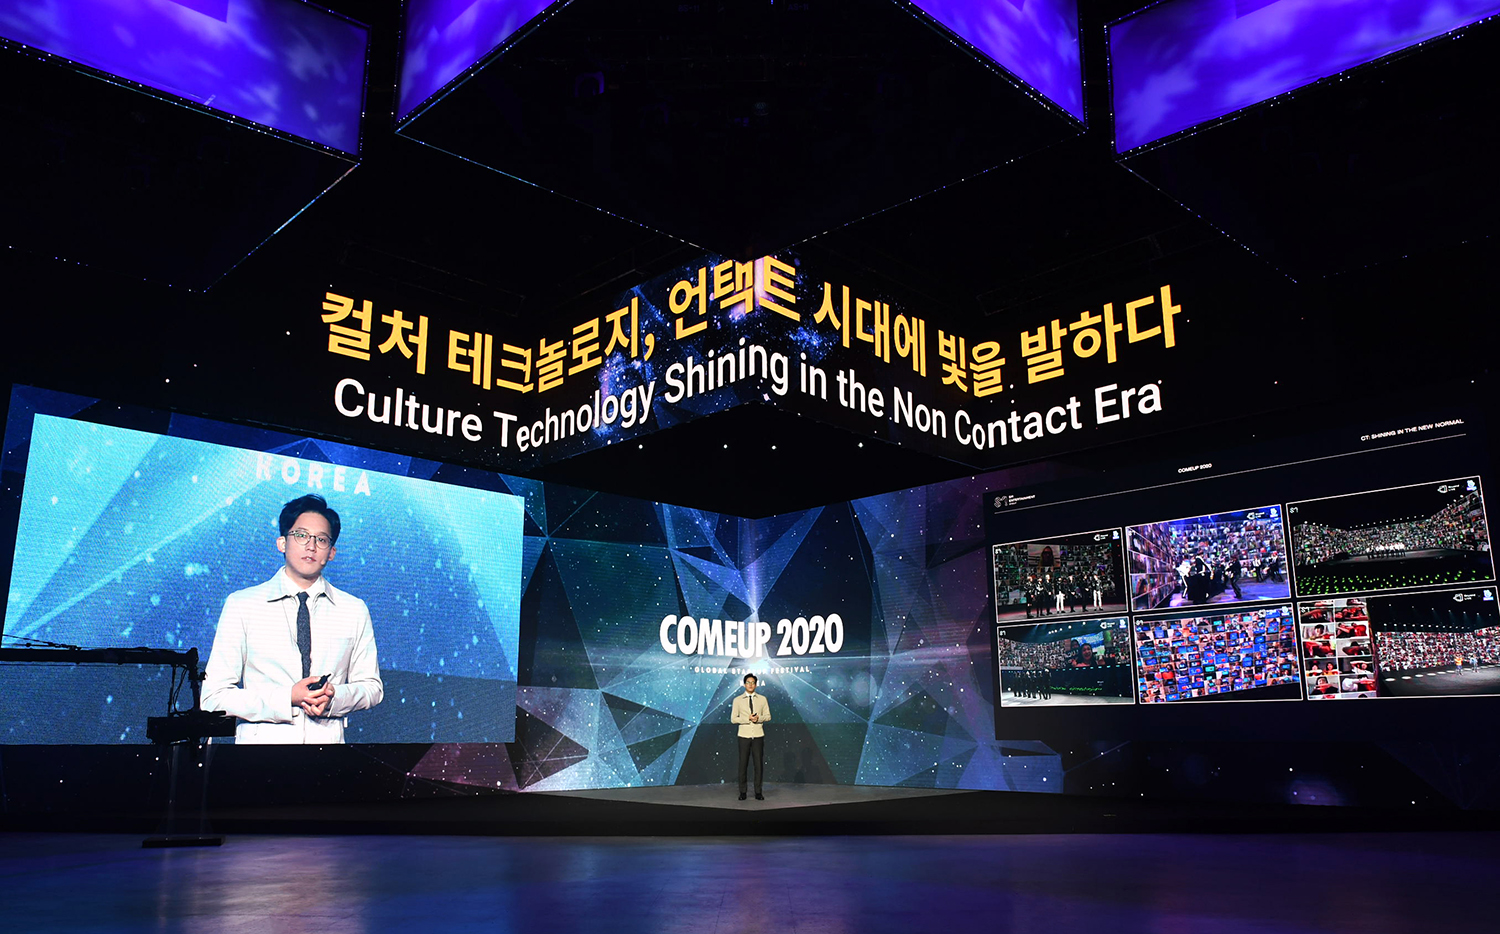 李圣洙代表“COMEUP 2020”主题演讲图片 2.jpg